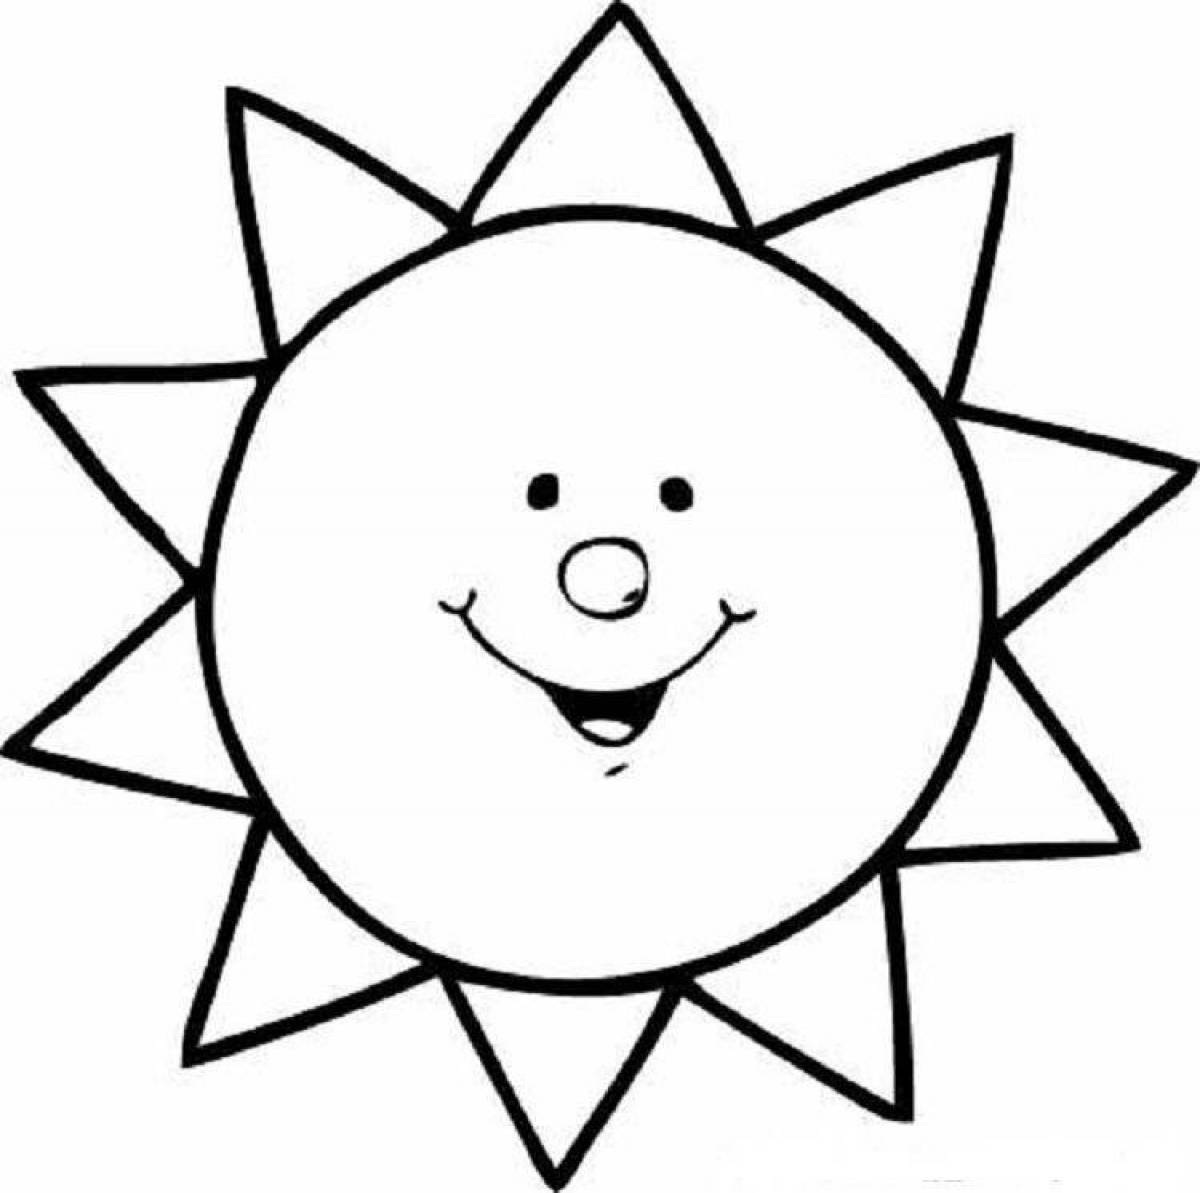 Luminous sun coloring book for kids